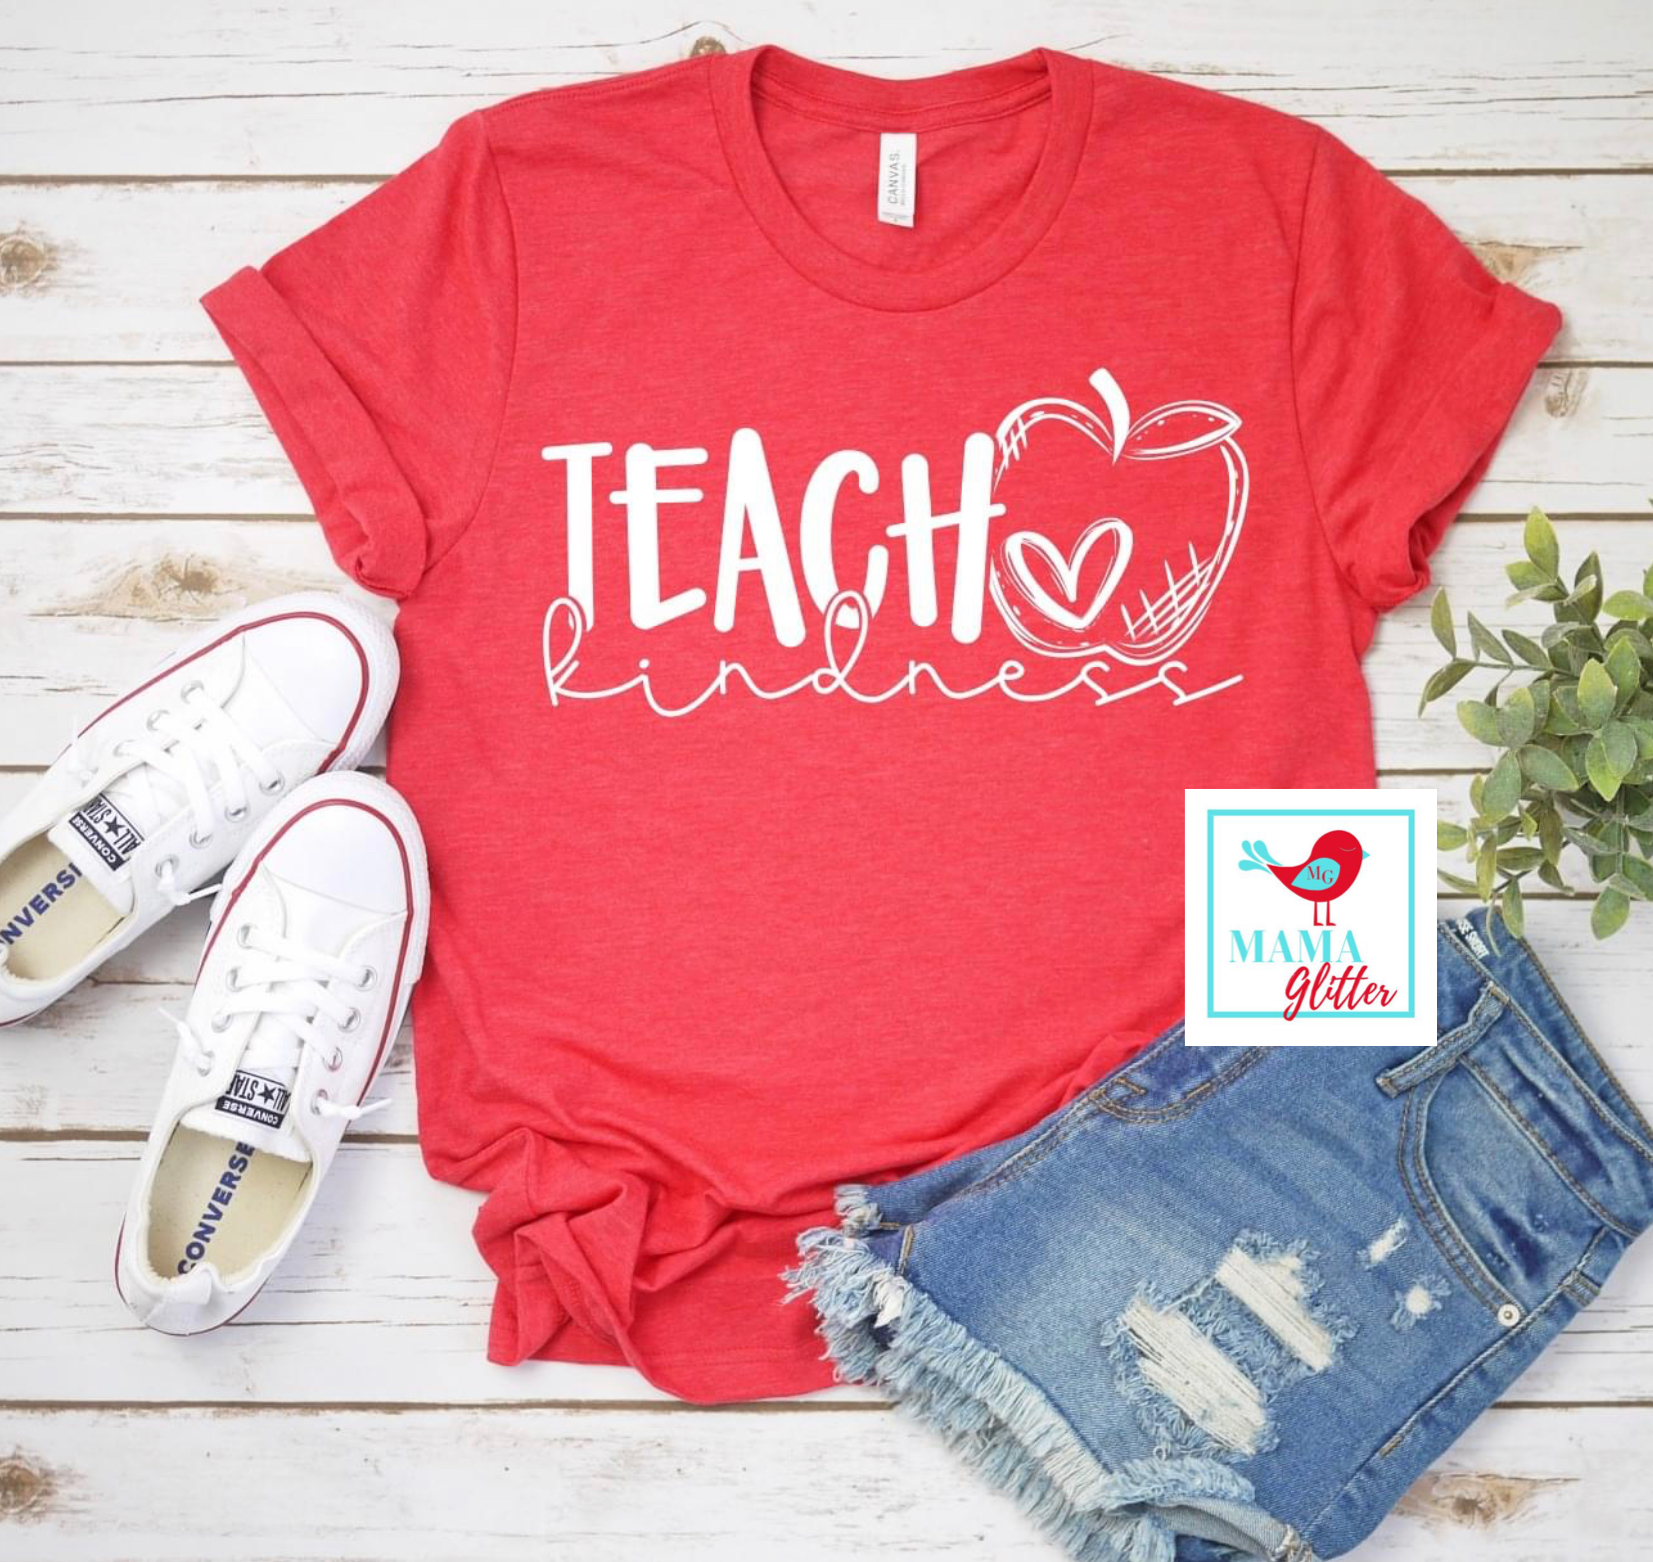 Teach Kindness - Teacher